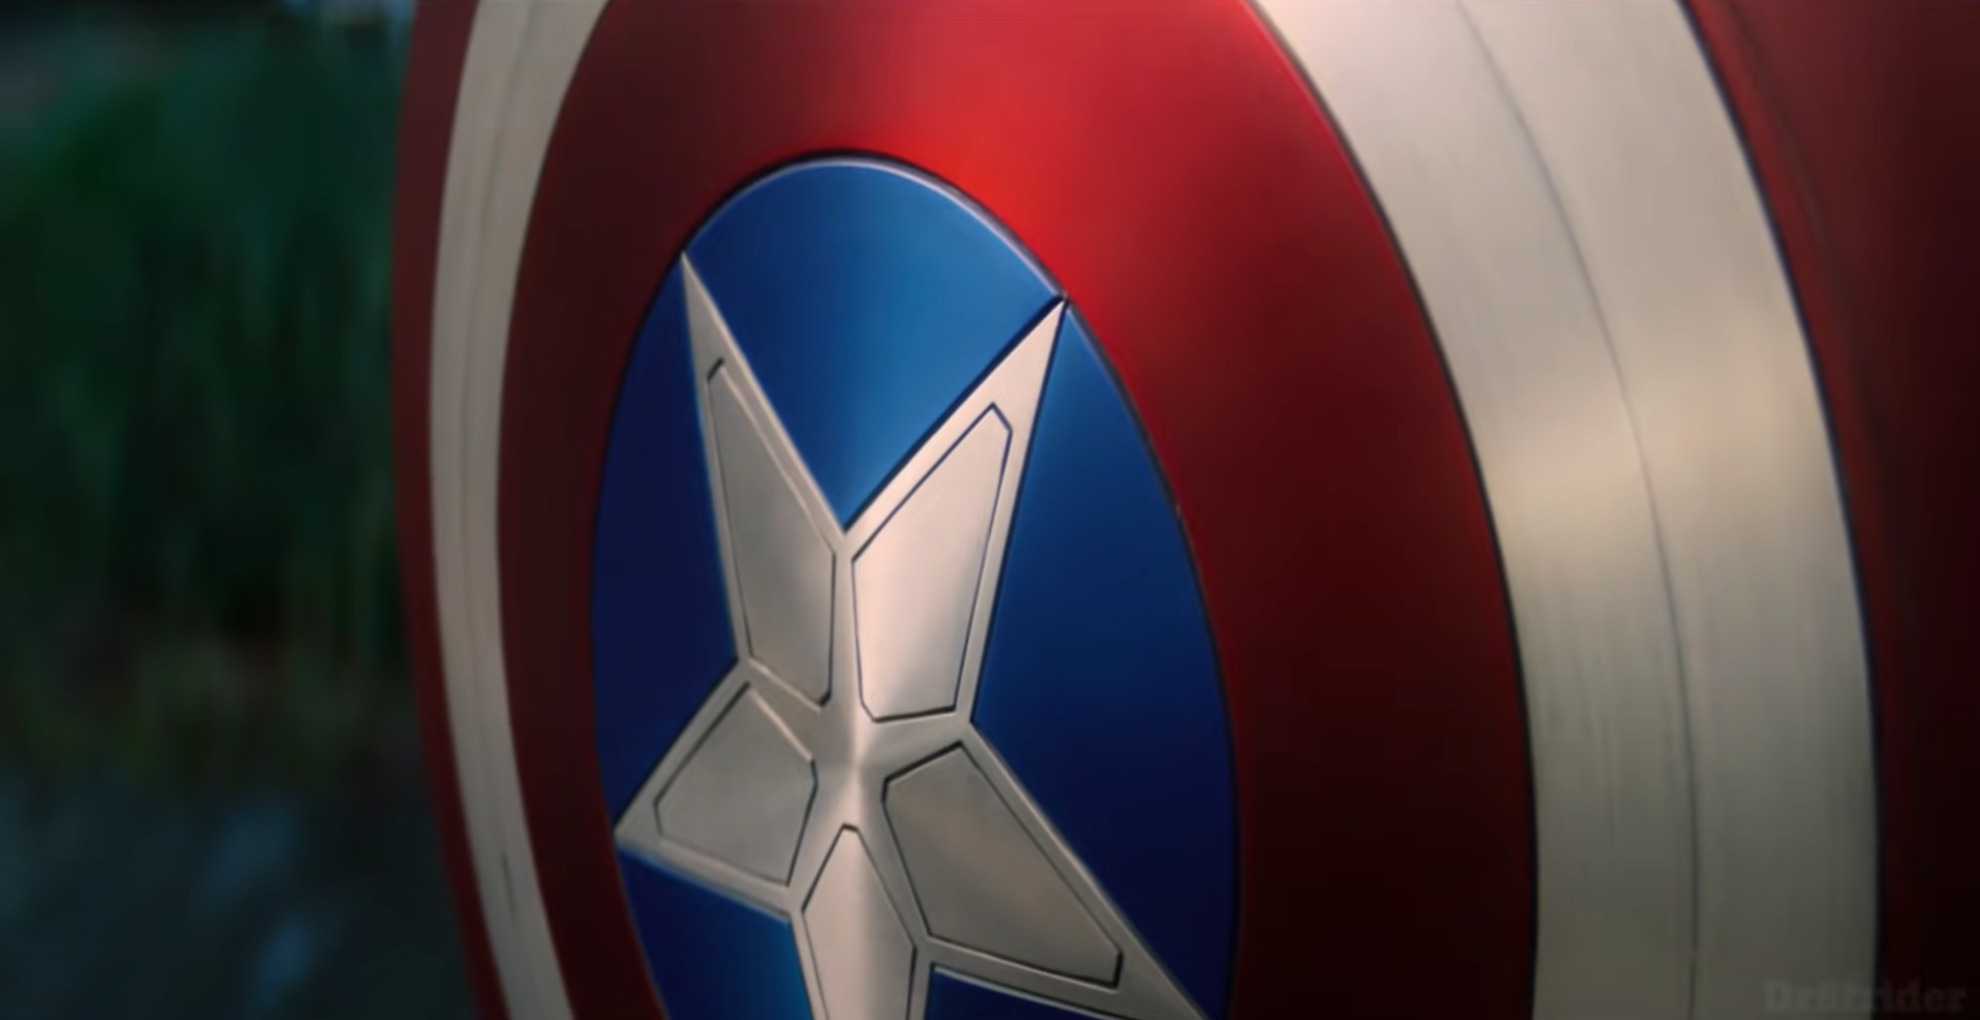 Bouclier Captain America casse le mur : Sucette Physiologique